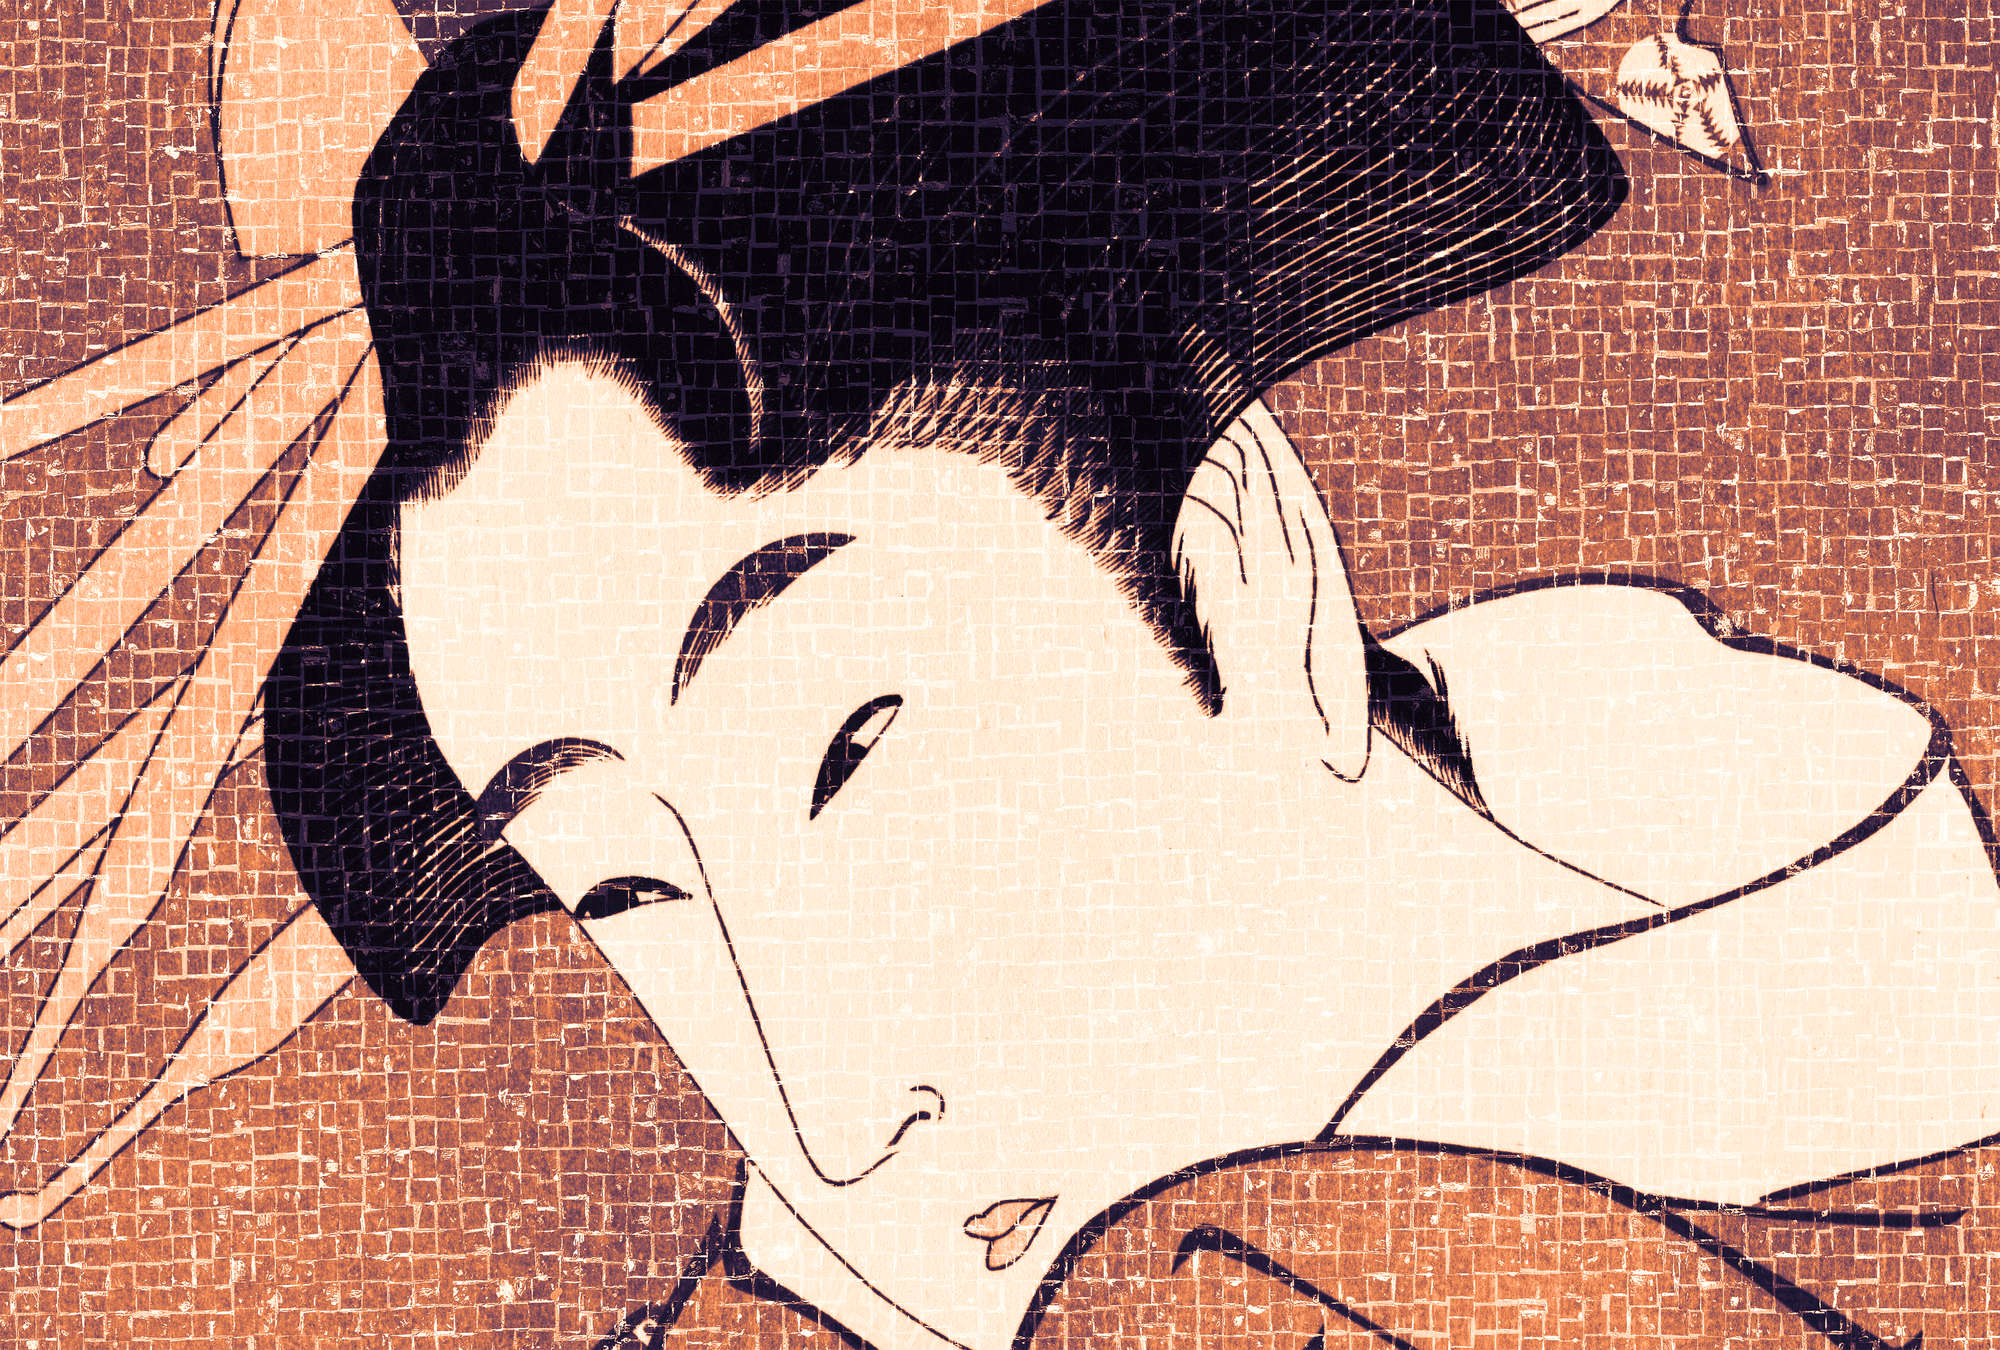             Fotomural Samurai, diseño asiático en estilo pixelado - naranja, crema, negro
        